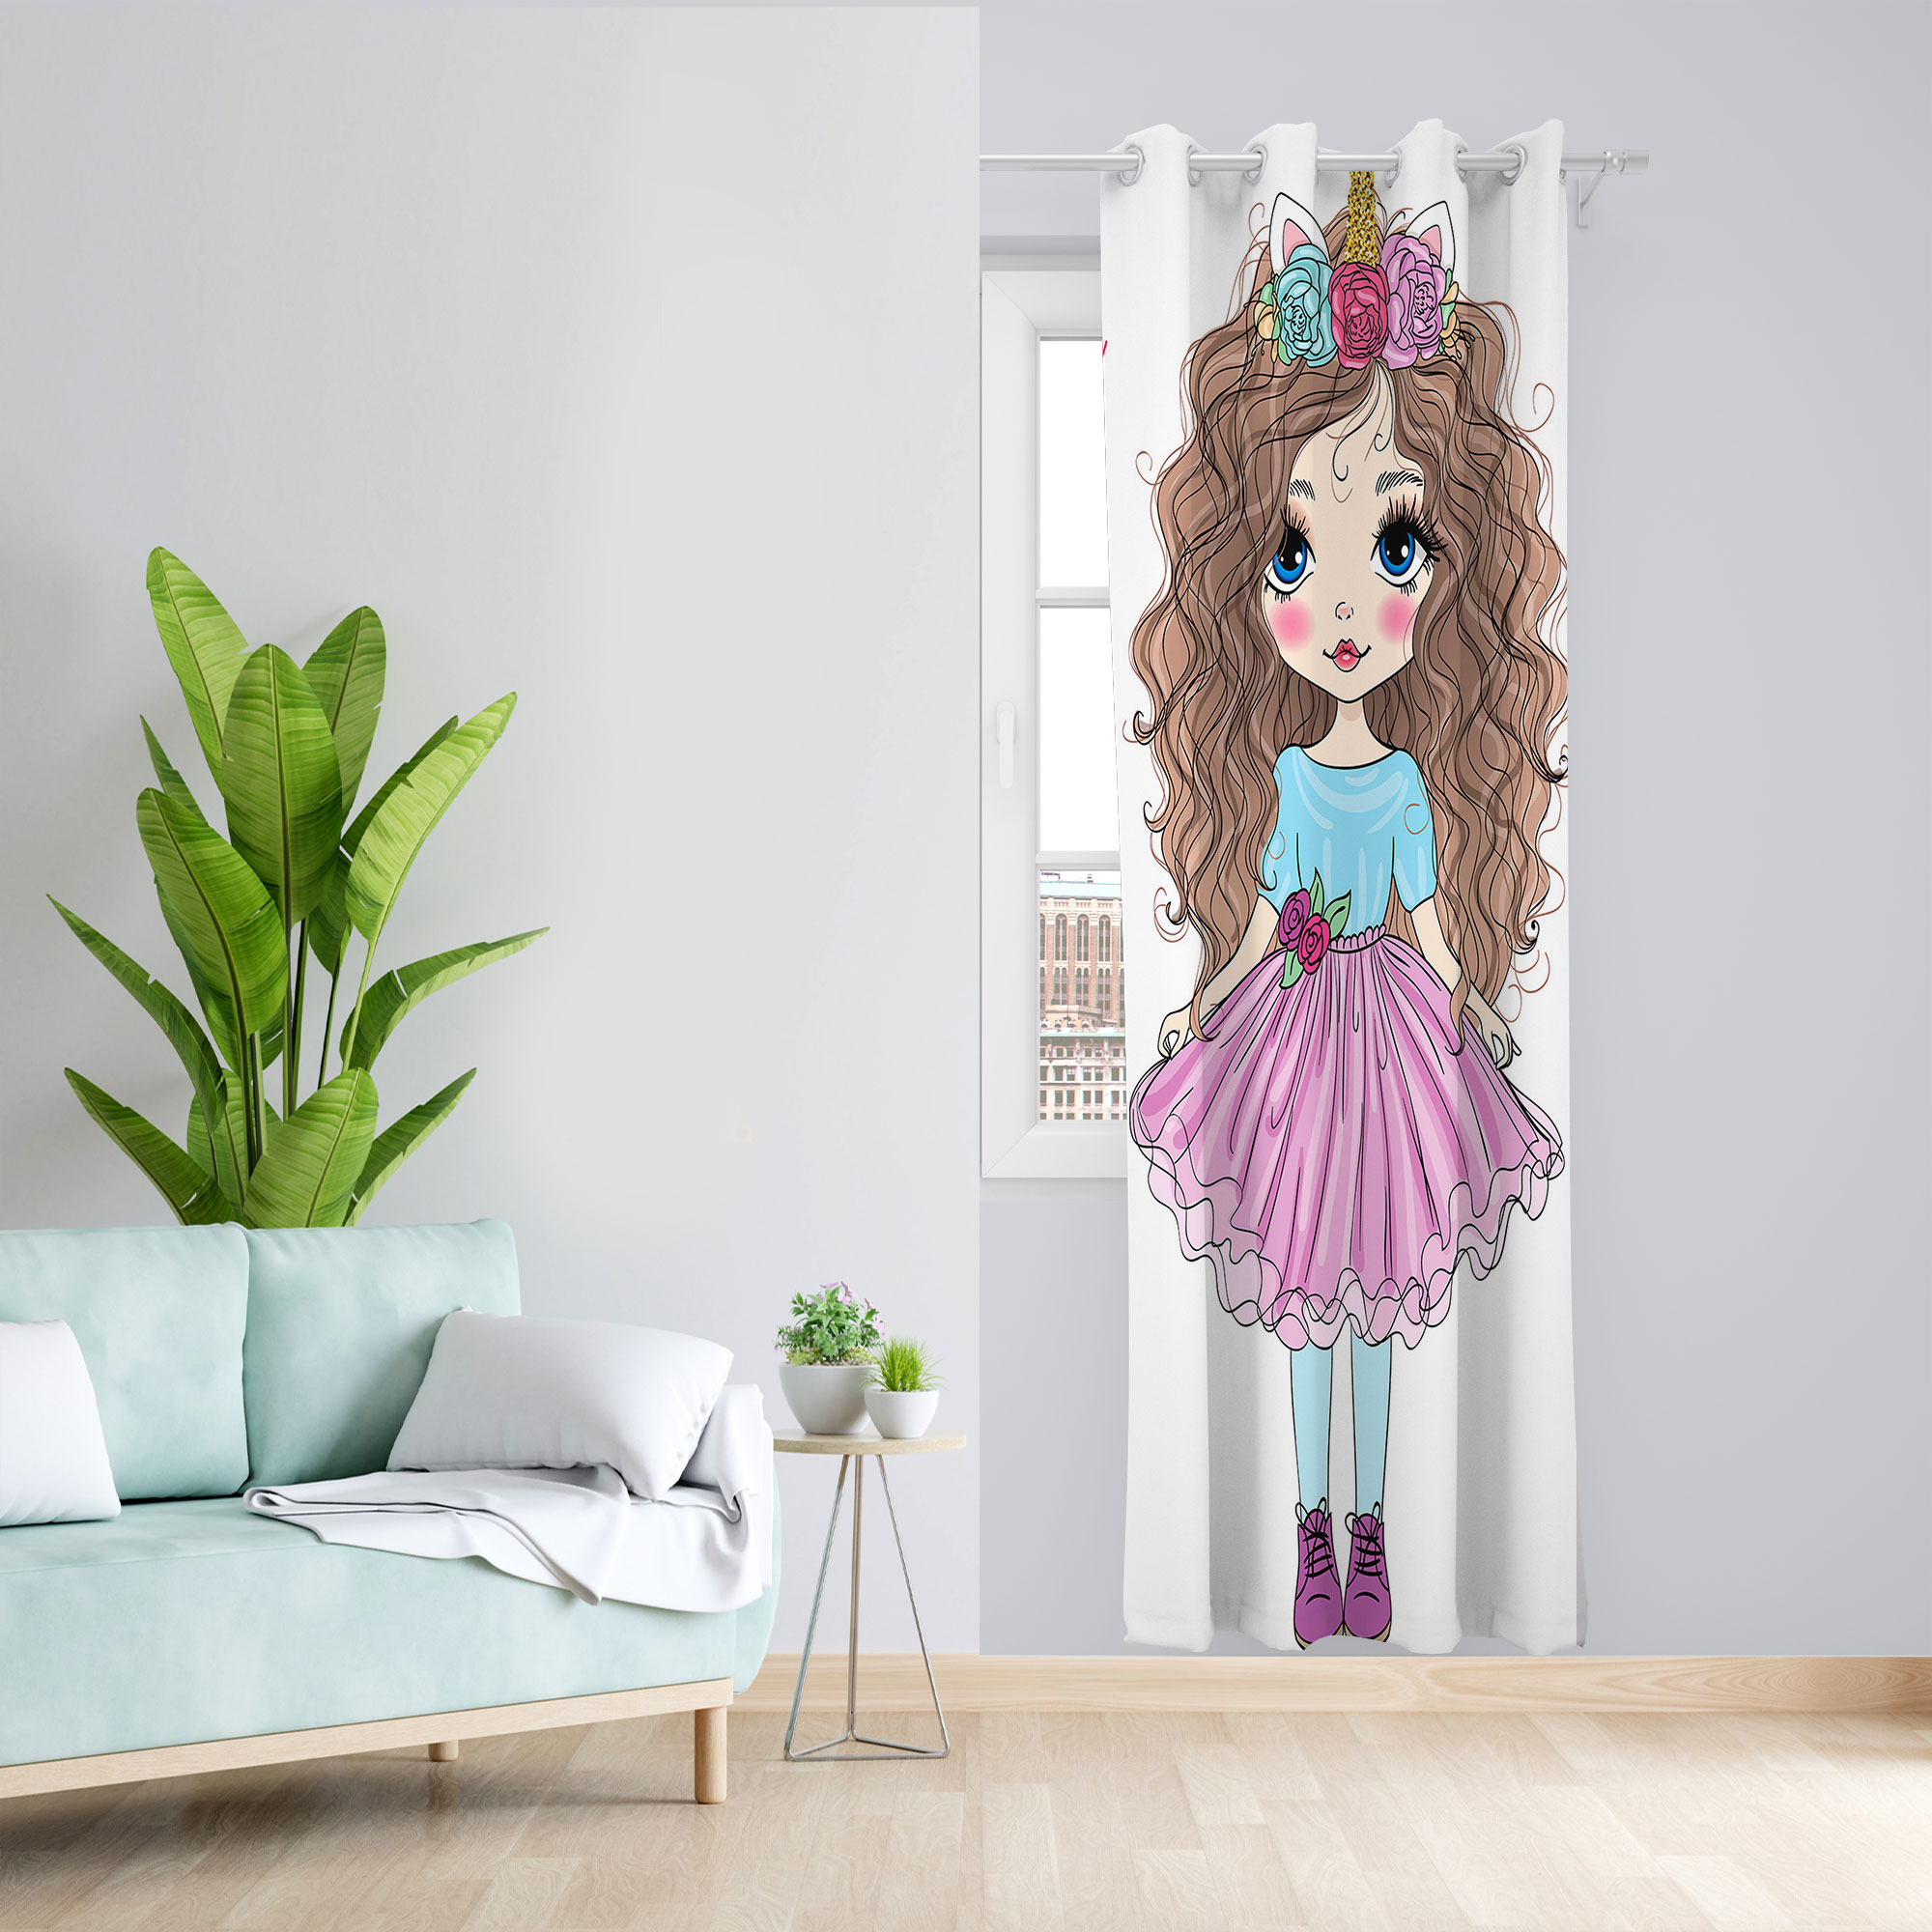 پرده مدل هازان پانچی طرح اتاق کودک دخترانه چاپی کد 2645 سایز 140x280 سانتی متر